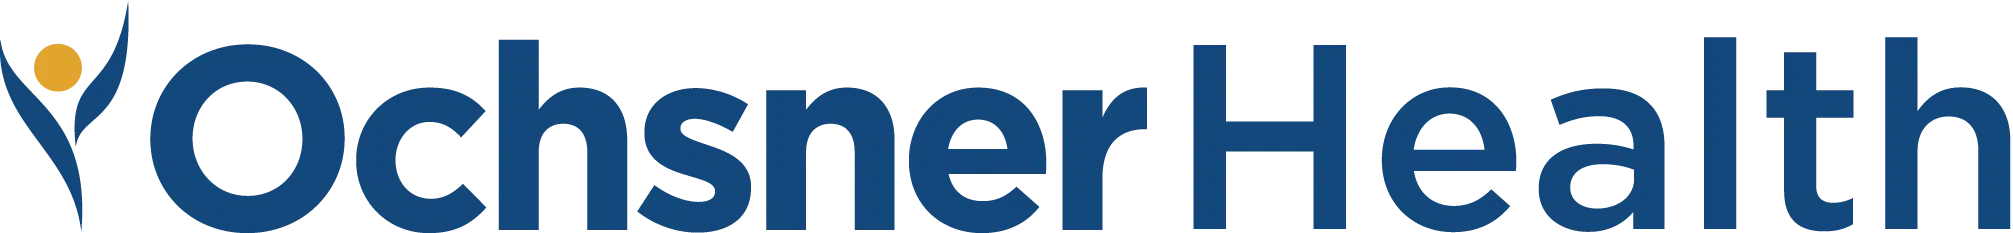 ochsner_health_logo